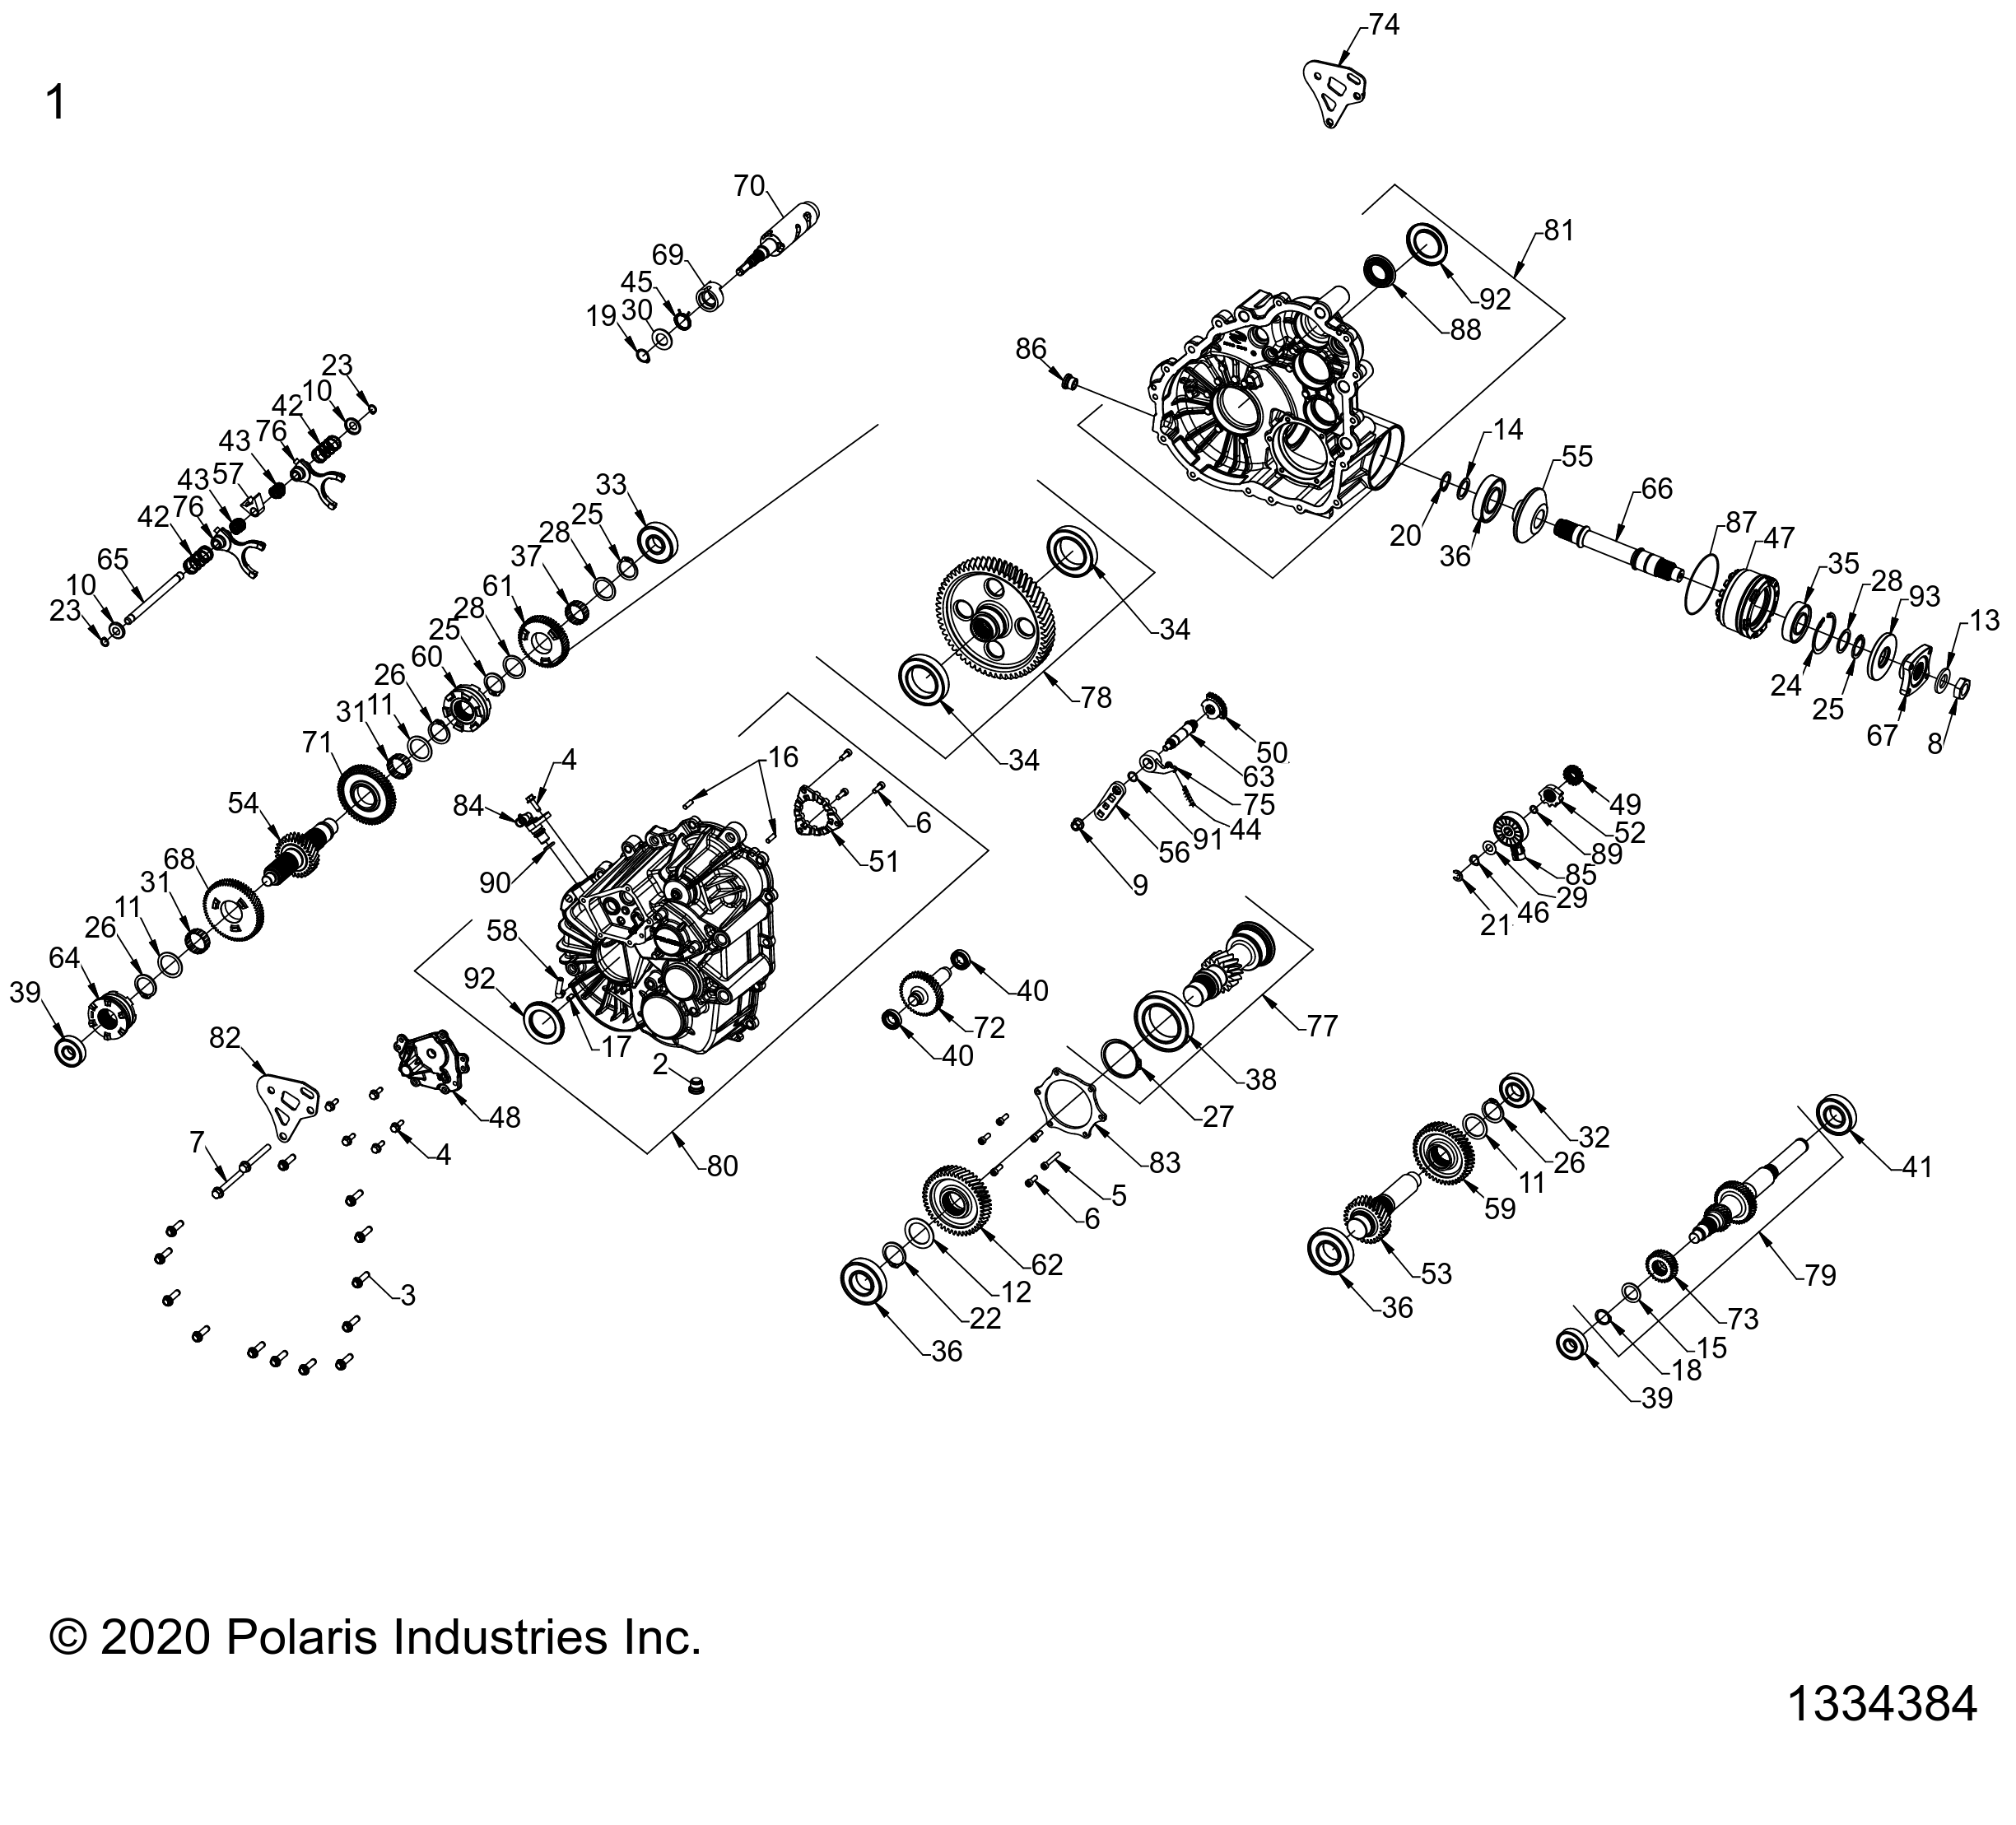 Foto diagrama Polaris que contem a peça 3235803